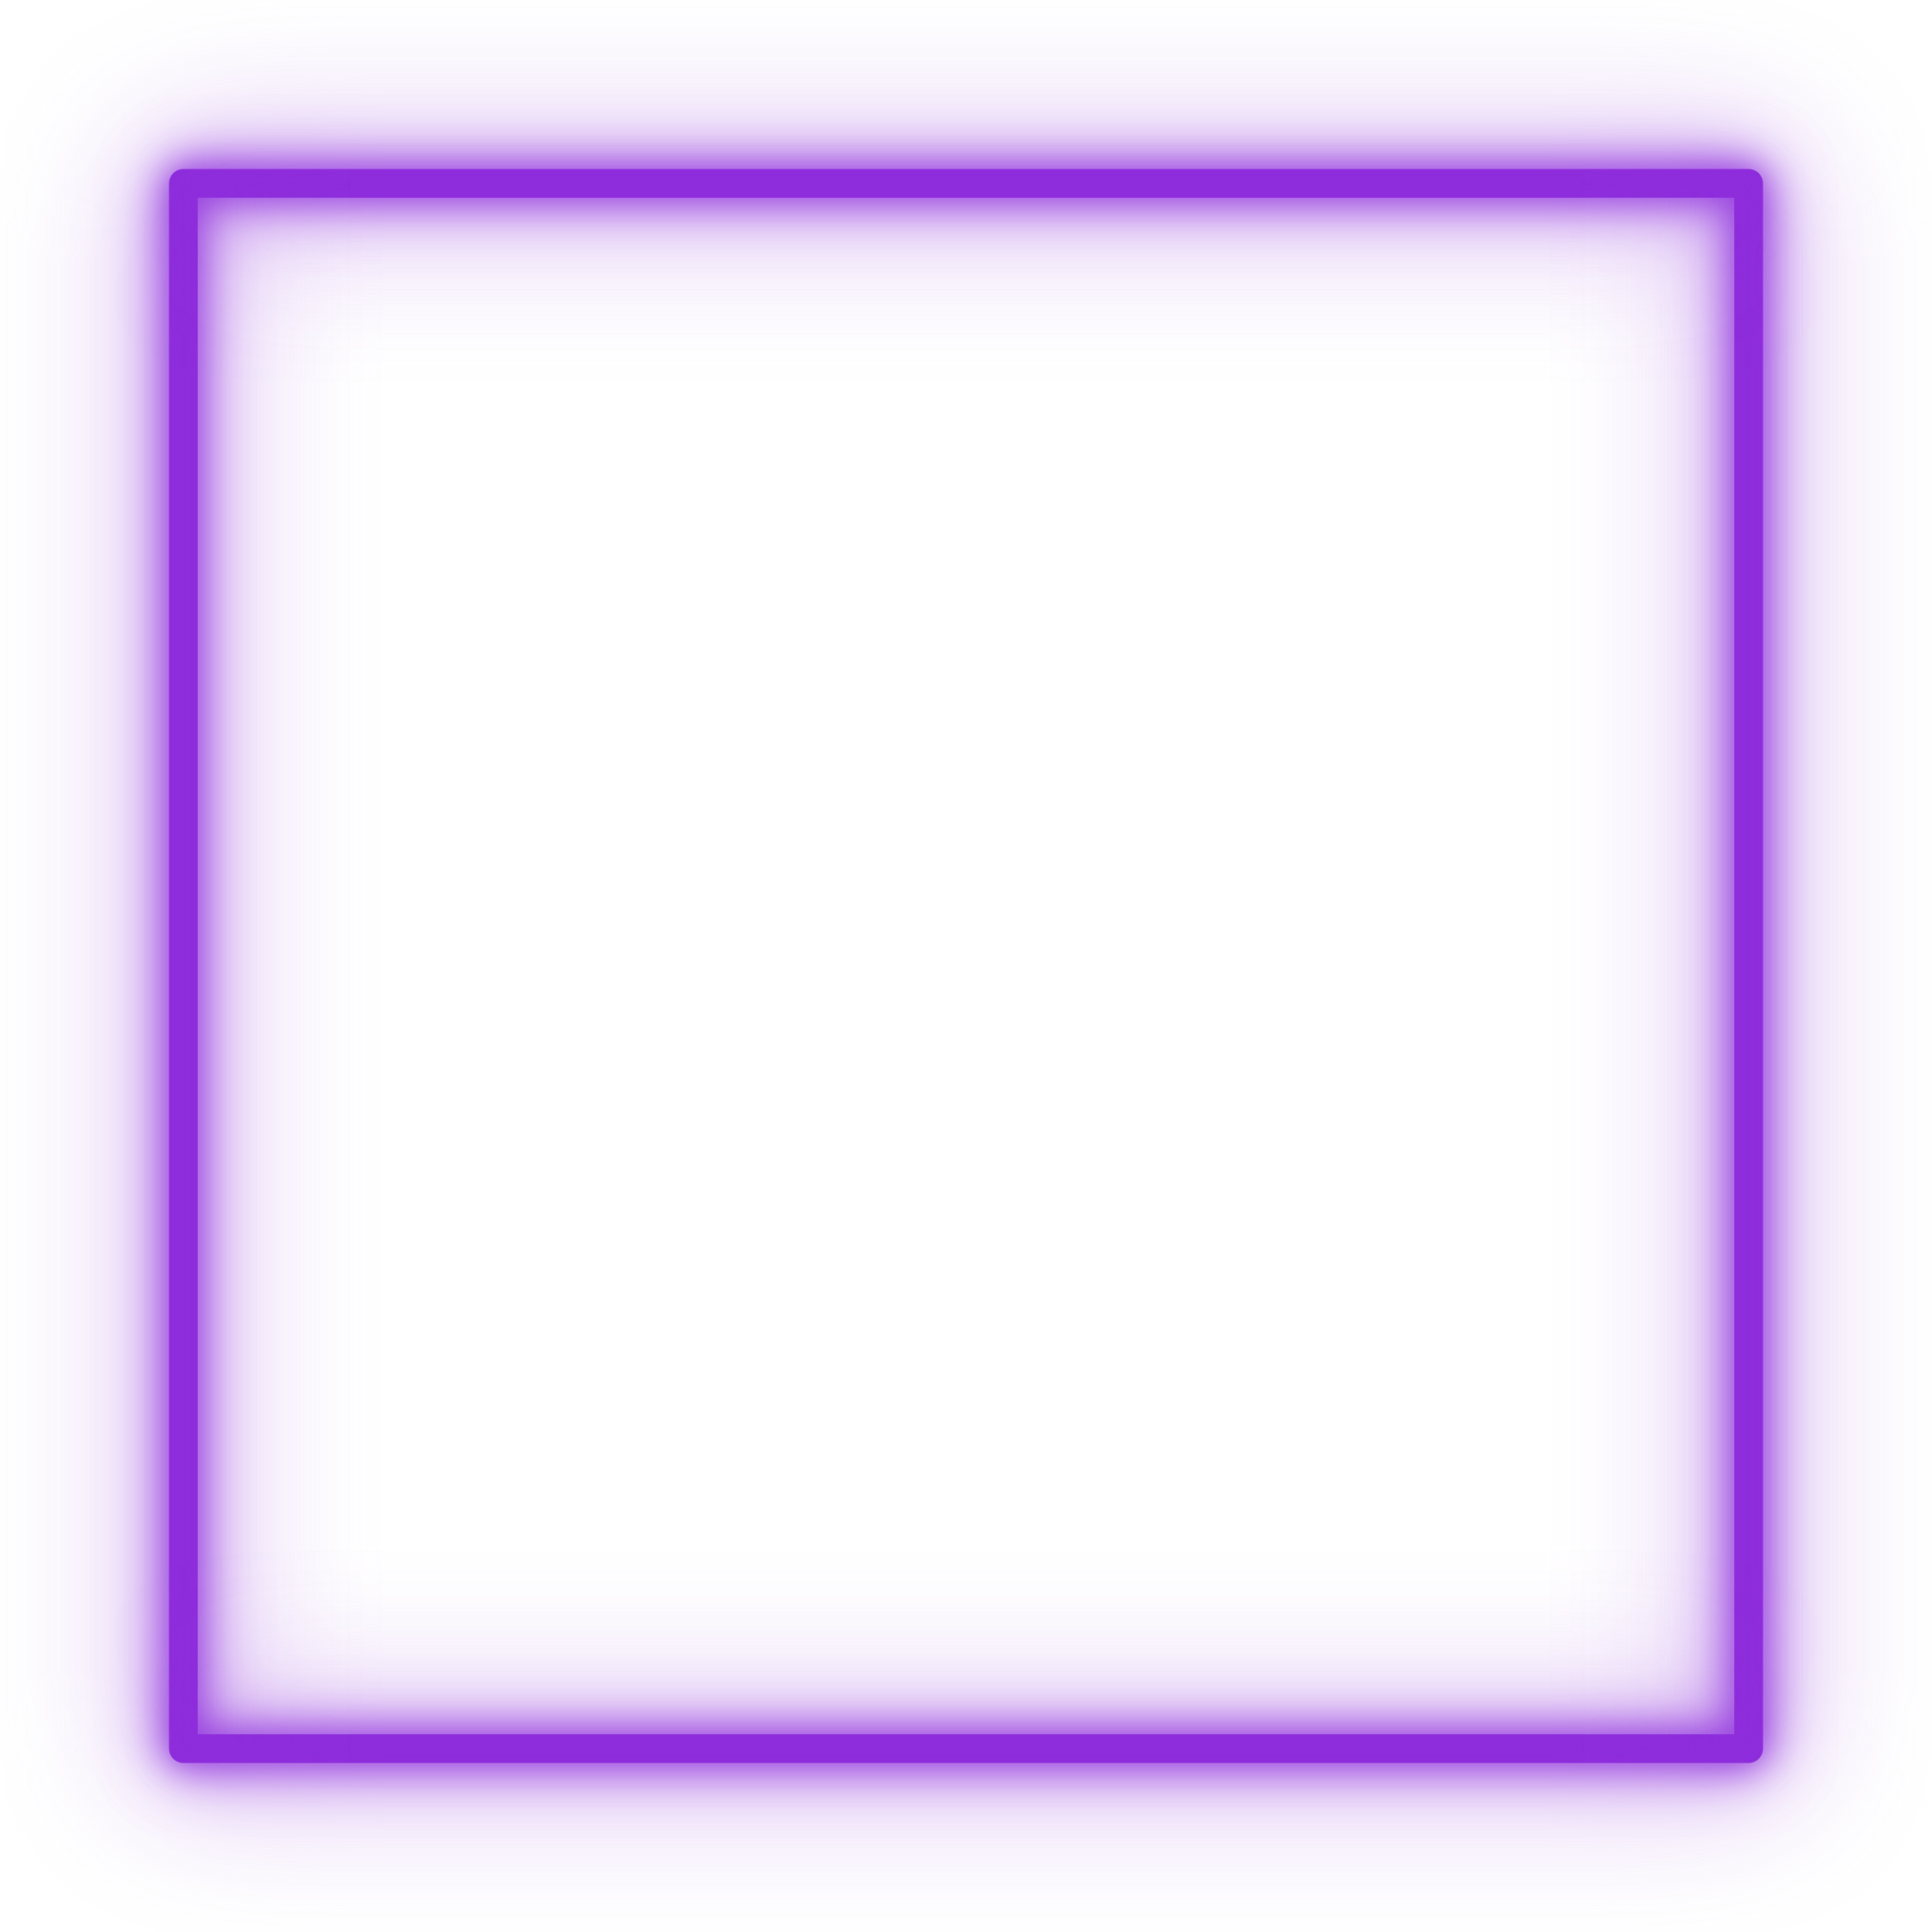 Purple square neon frame